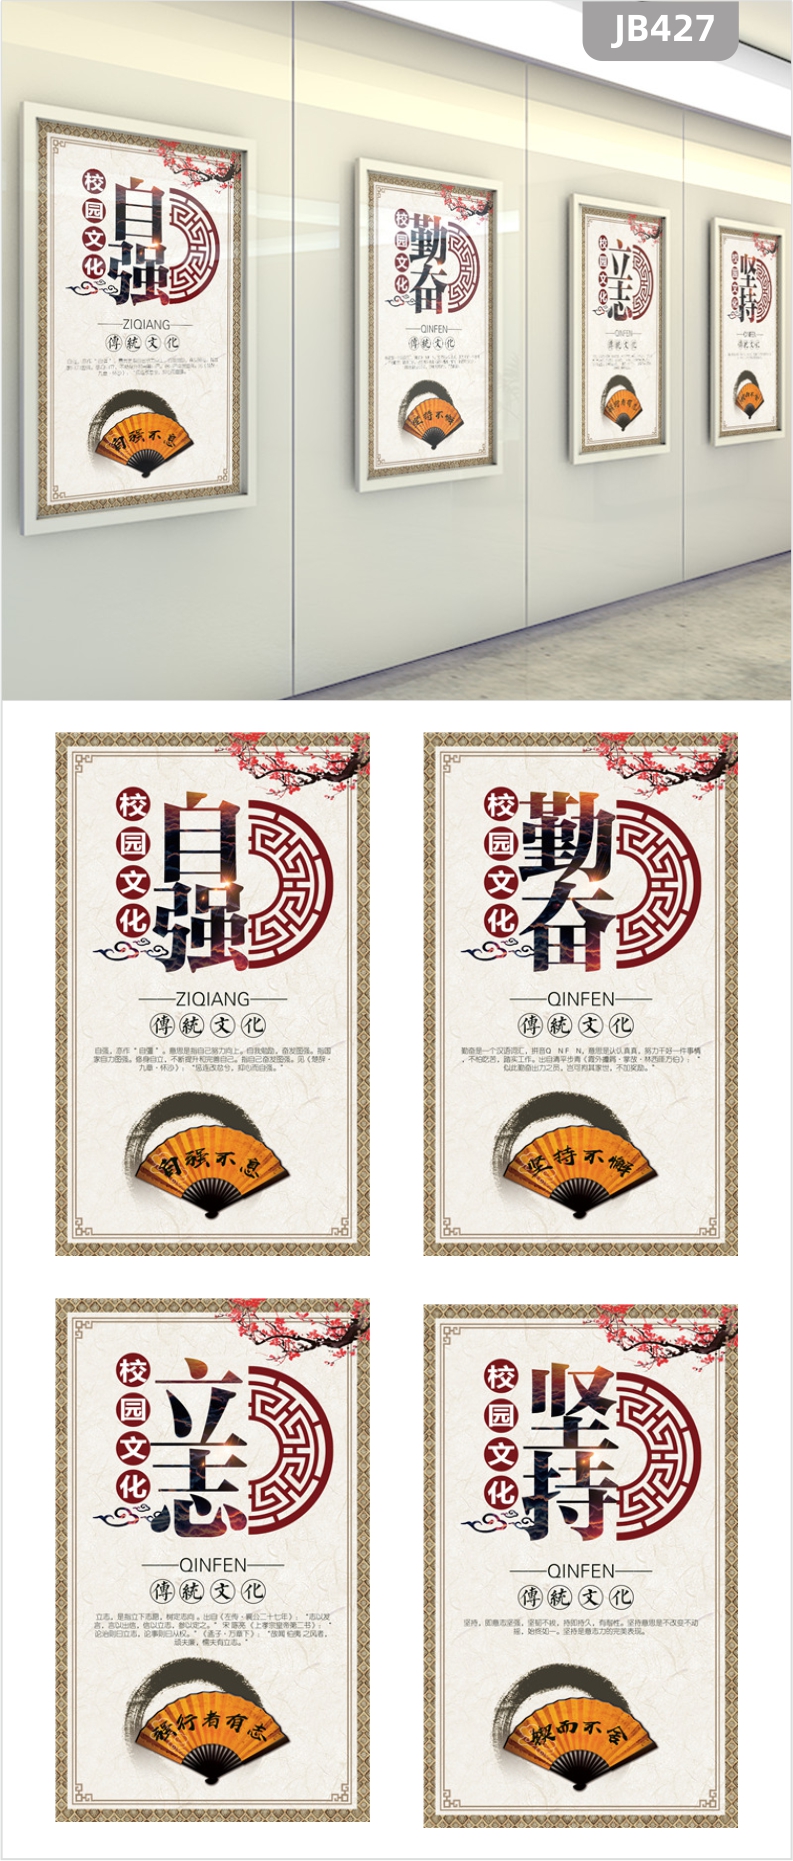 中华国学教育挂图中华传统文化展板宣传画海报自强勤奋贴画办公室挂画